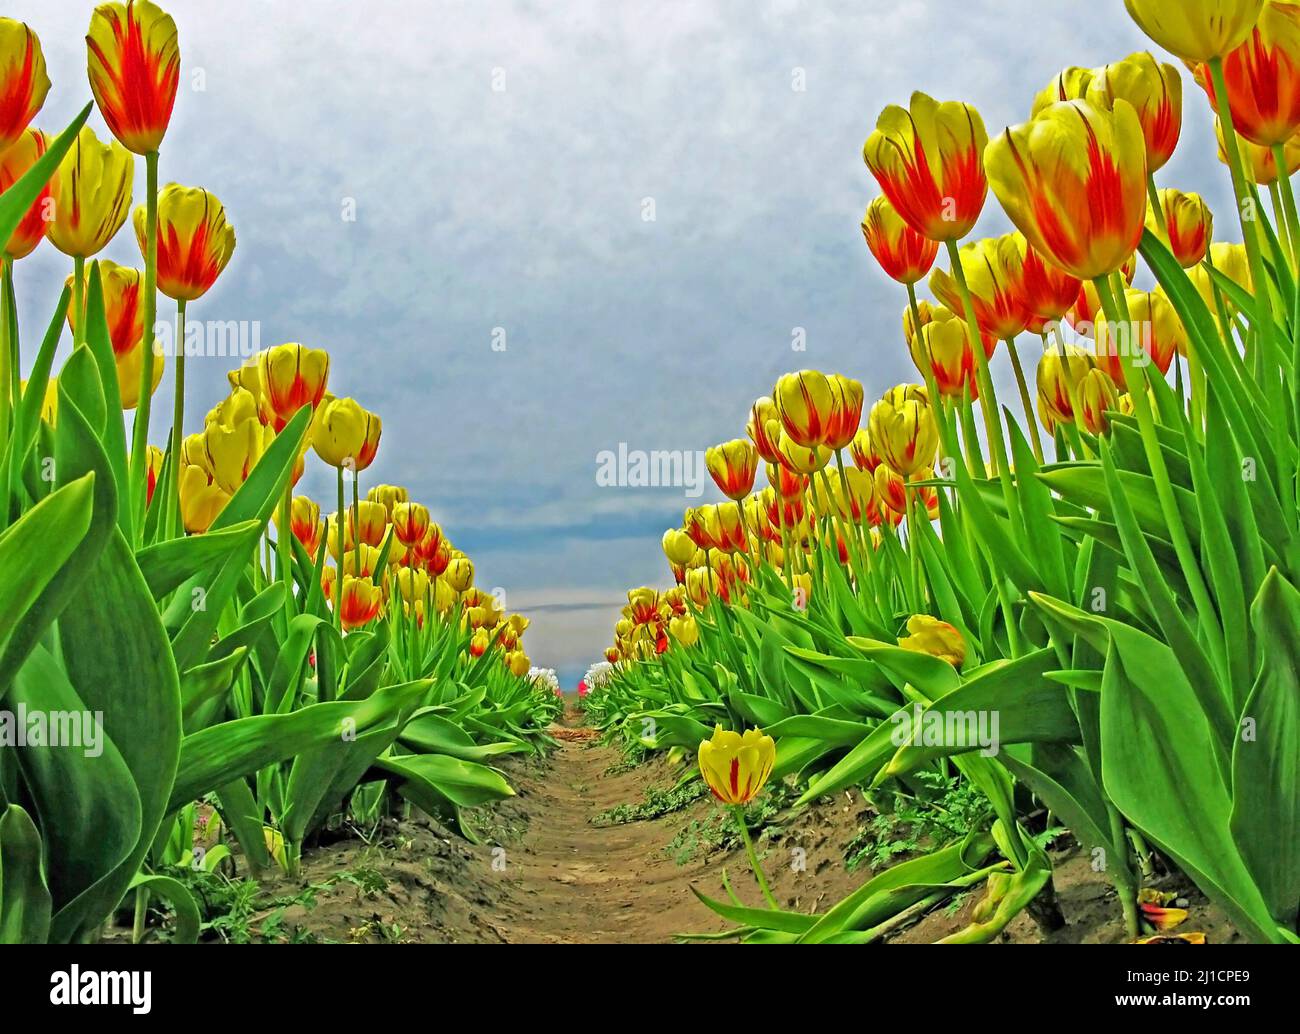 Tulpenreihen - Bodenansicht - mehrere Tulpenreihen, die vom Boden aus gegen einen dunklen, bewölkten Himmel fotografiert wurden Stockfoto